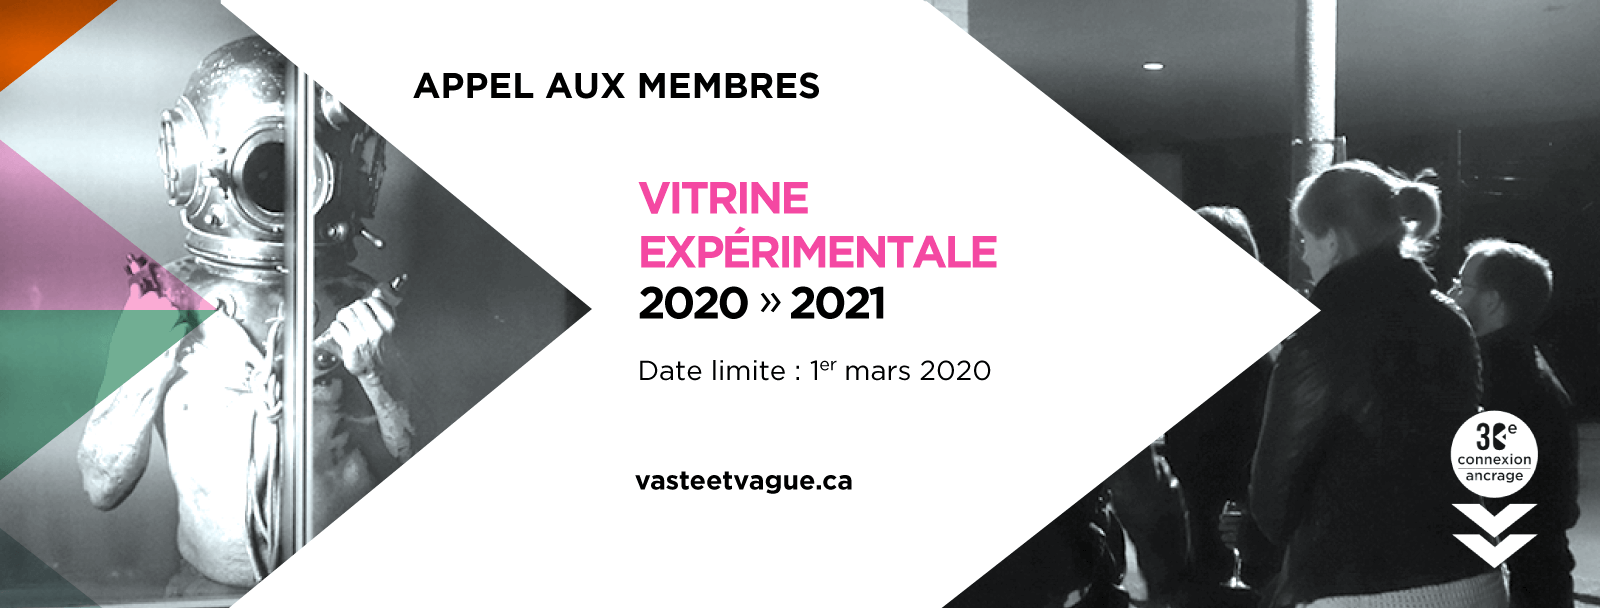 VITRINE EXPÉRIMENTALE 2020-2021 : Appel à projets réservé aux membres